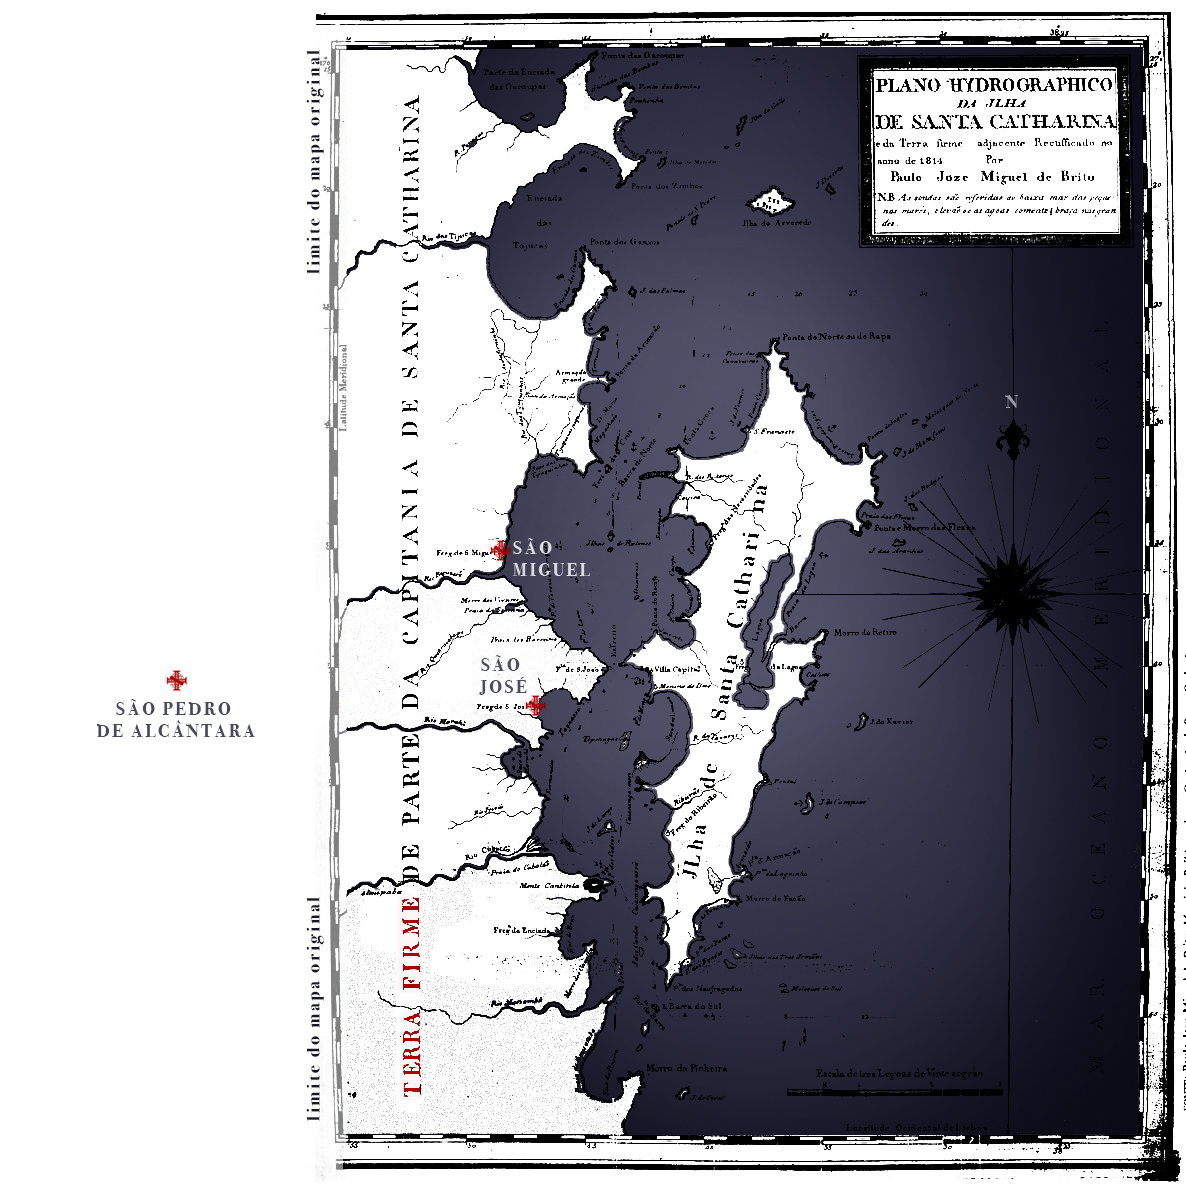 Mapa. "Plano Hidrográfico da Ilha de Santa Catharina e da terra firme adjacente." 1814, Paulo Joze Miguel de Brito. Colorido por HelgaLabs.